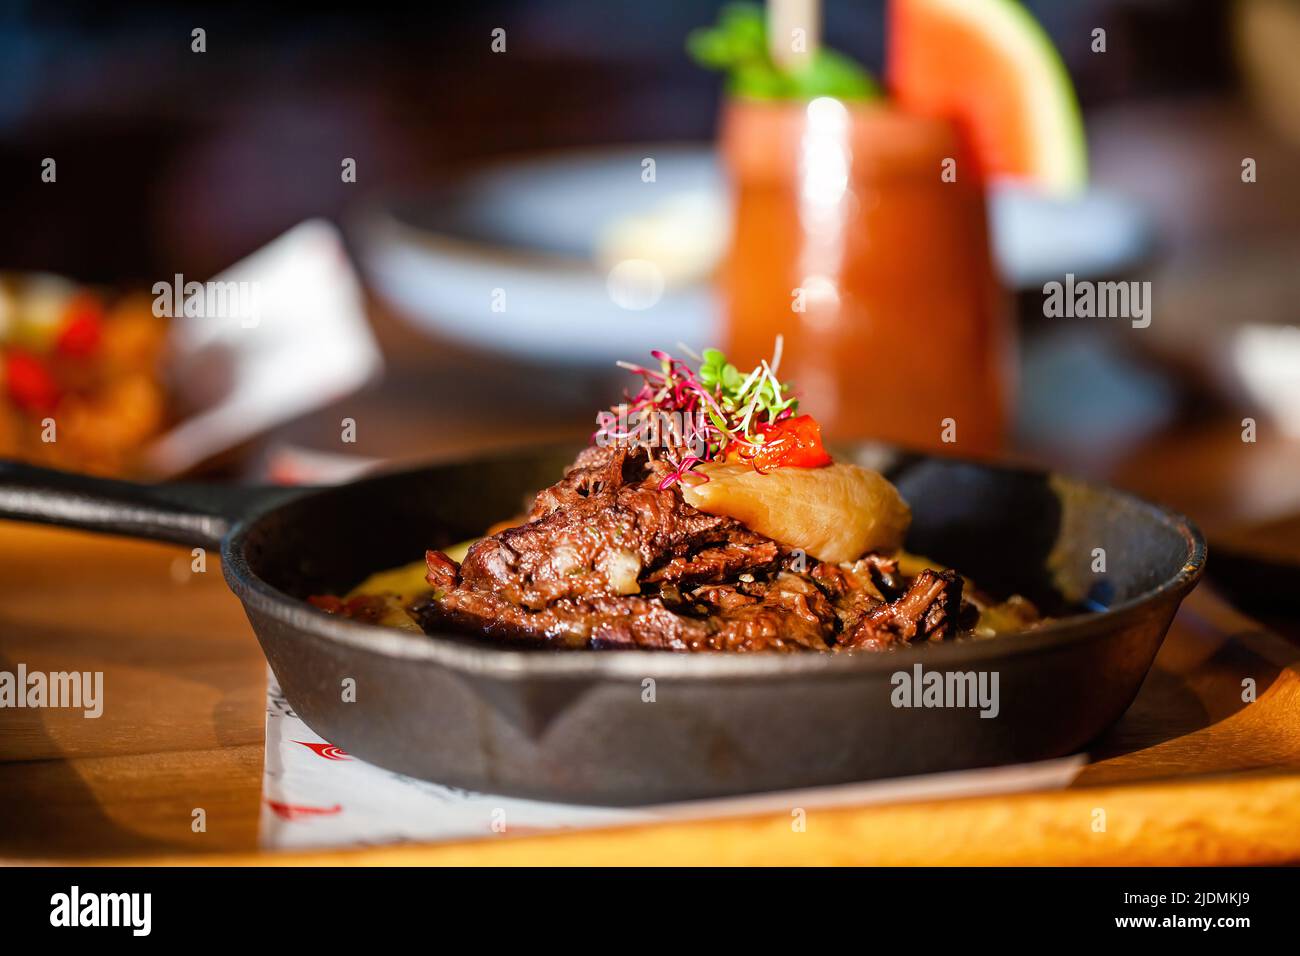 Viande fraîche cuite dans une poêle sur une table en bois dans un restaurant de luxe. Beaf grillée avec légumes et boisson froide sur fond. Cuisine fine Banque D'Images